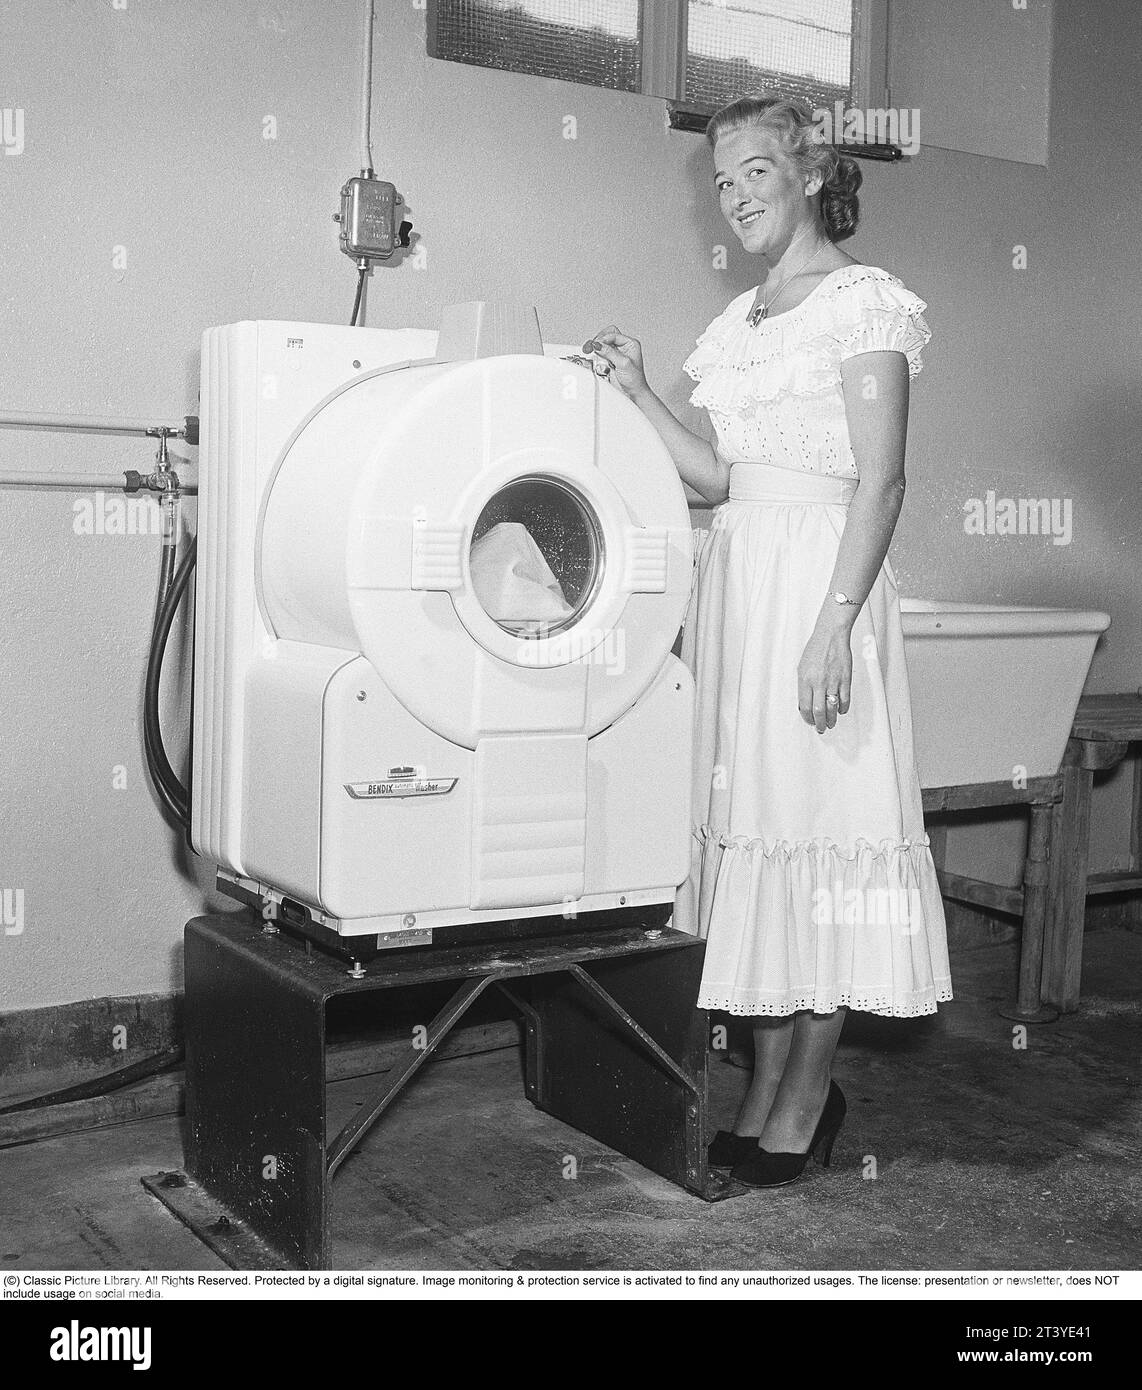 Dans les années 1950 Une jeune femme dans une machine à laver américaine ultramoderne du fabricant Bendix. Le modèle était la première machine à laver automatique et n'était pas différent des machines à laver d'aujourd'hui. Suède 1950. Kristoffersson réf AZ78-8 Banque D'Images